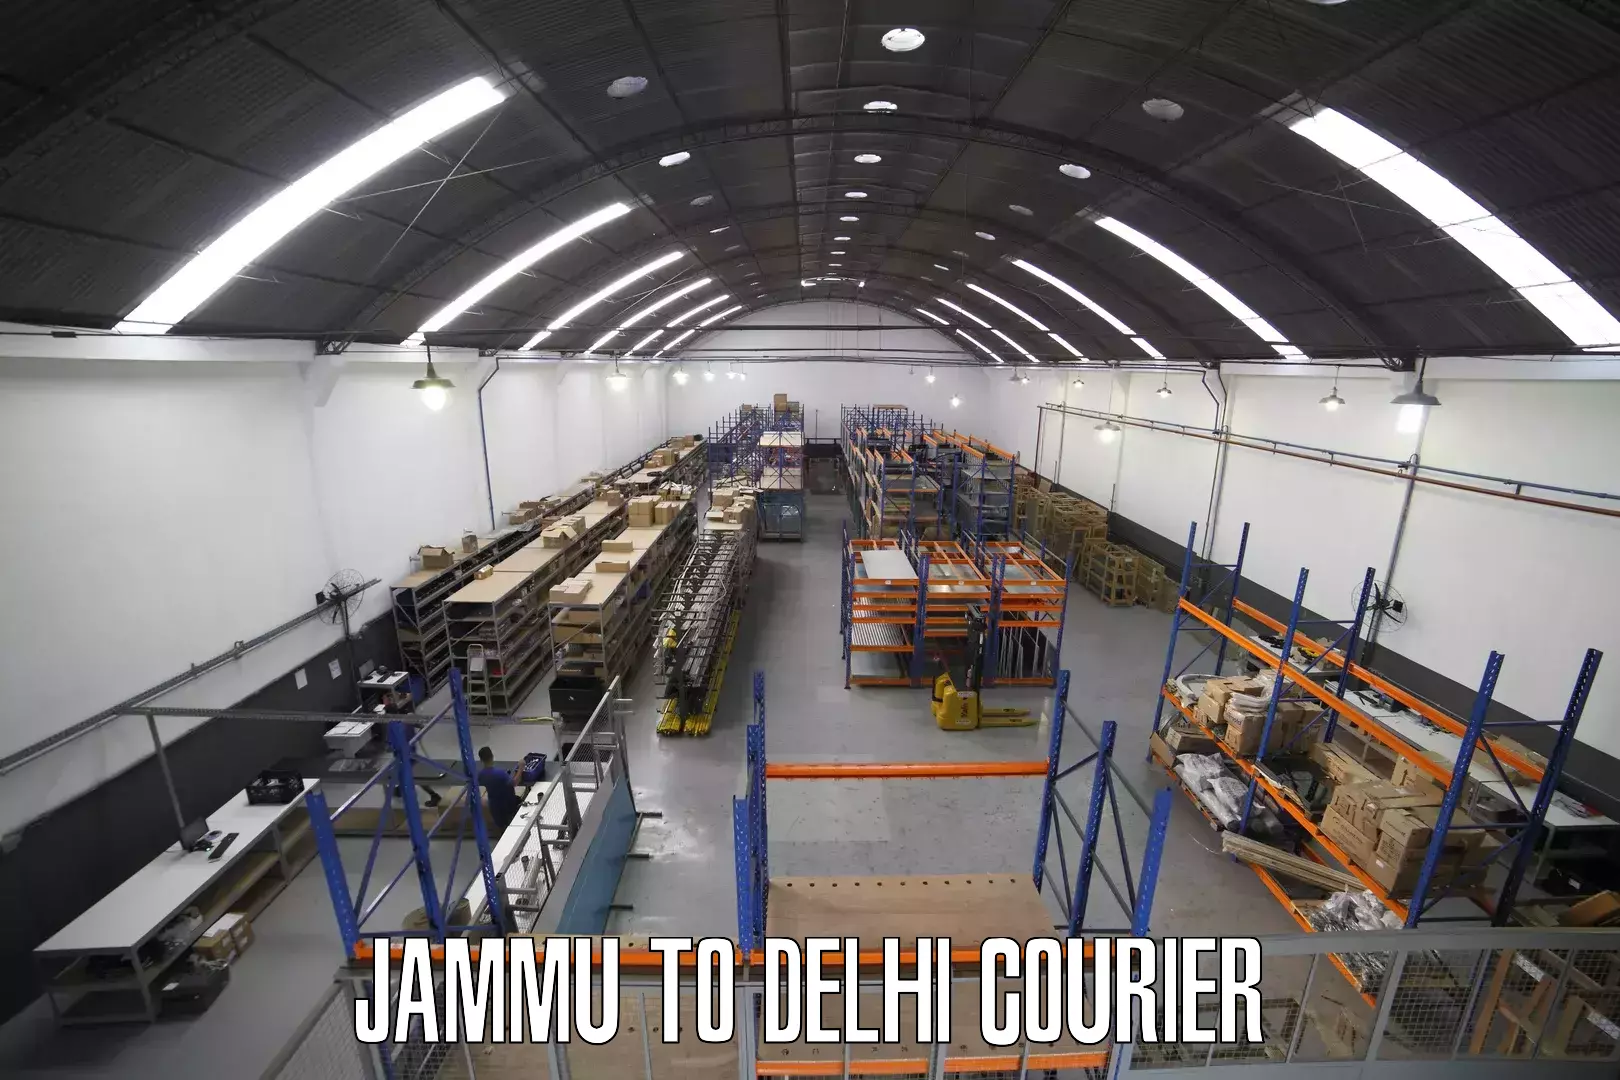 On-call courier service Jammu to Sarojini Nagar